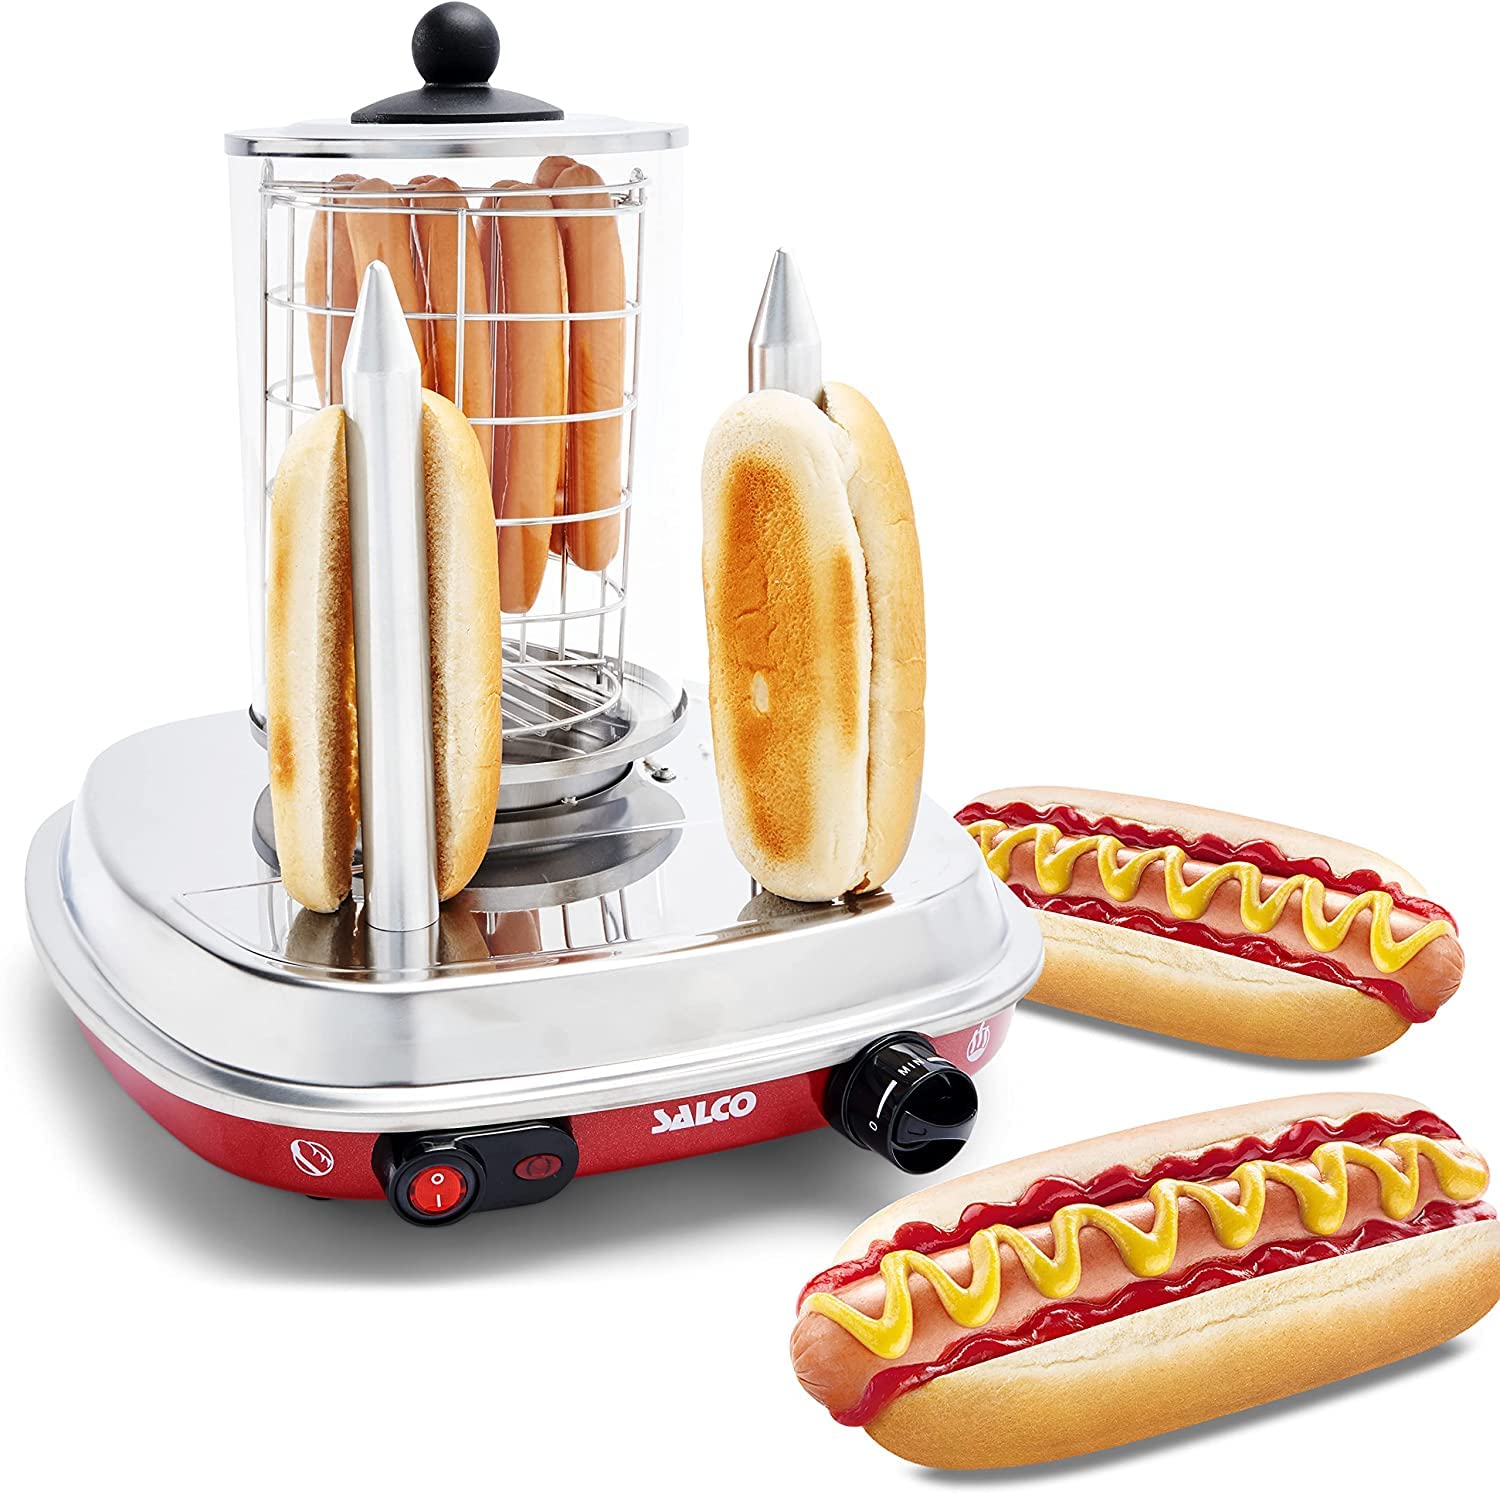 Salco HotDog Maker Retro-Style Fast Food Thermo-Control Dampfgarer mit Heizspieße für Würstchen und Brötchen 450W